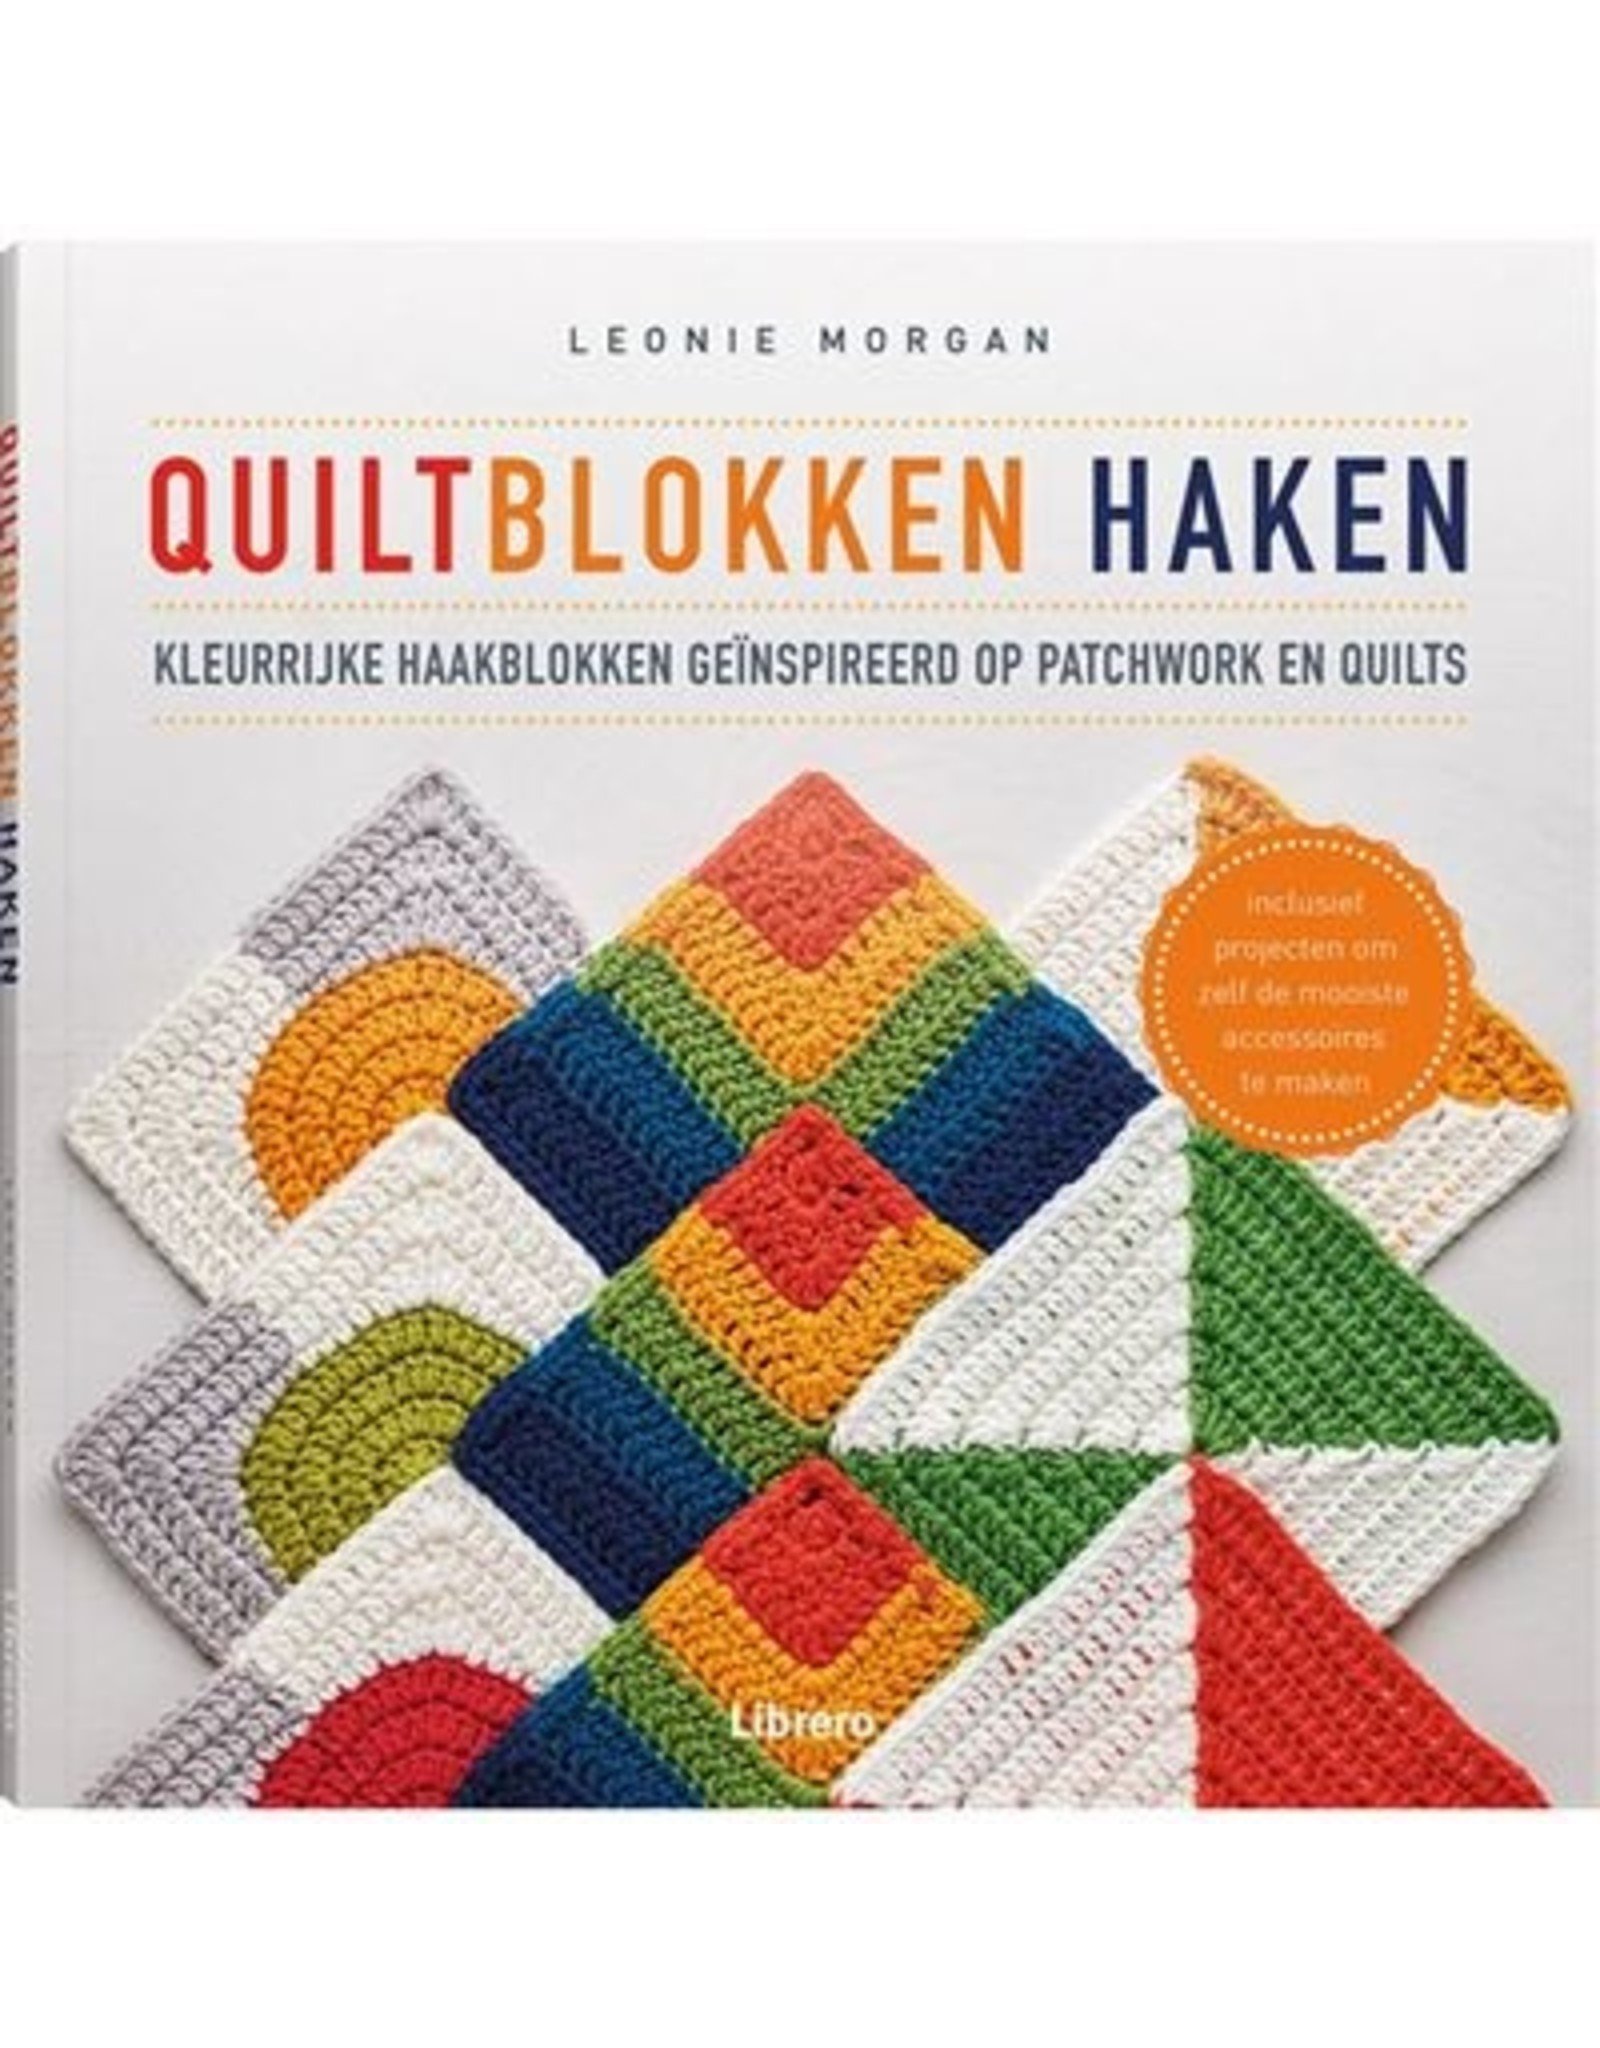 Boek: Quiltblokken haken - Leonie Morgan